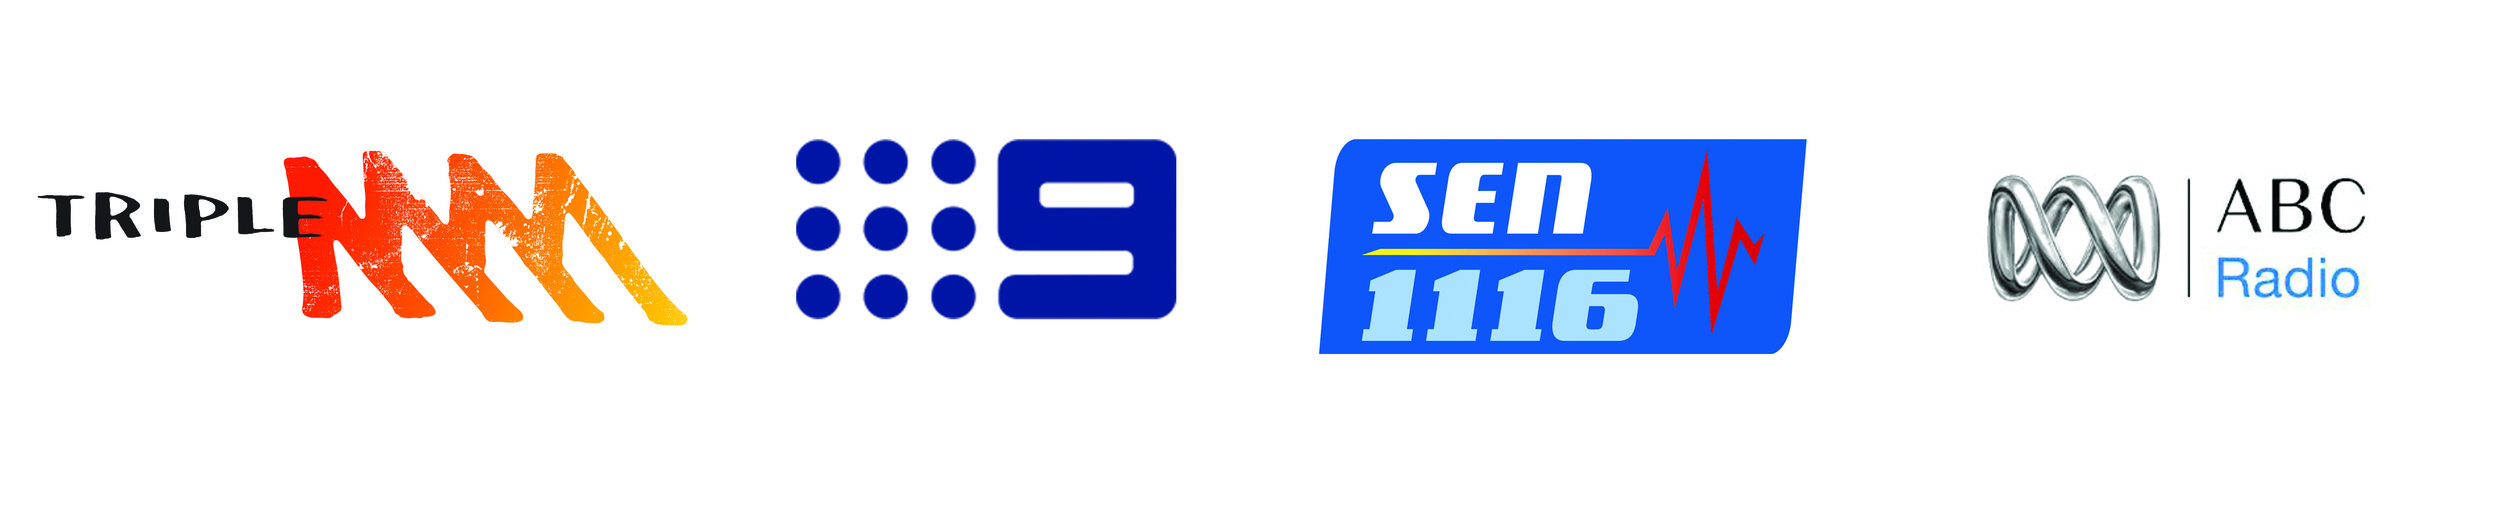 Media 2 - All services - new logos.jpg